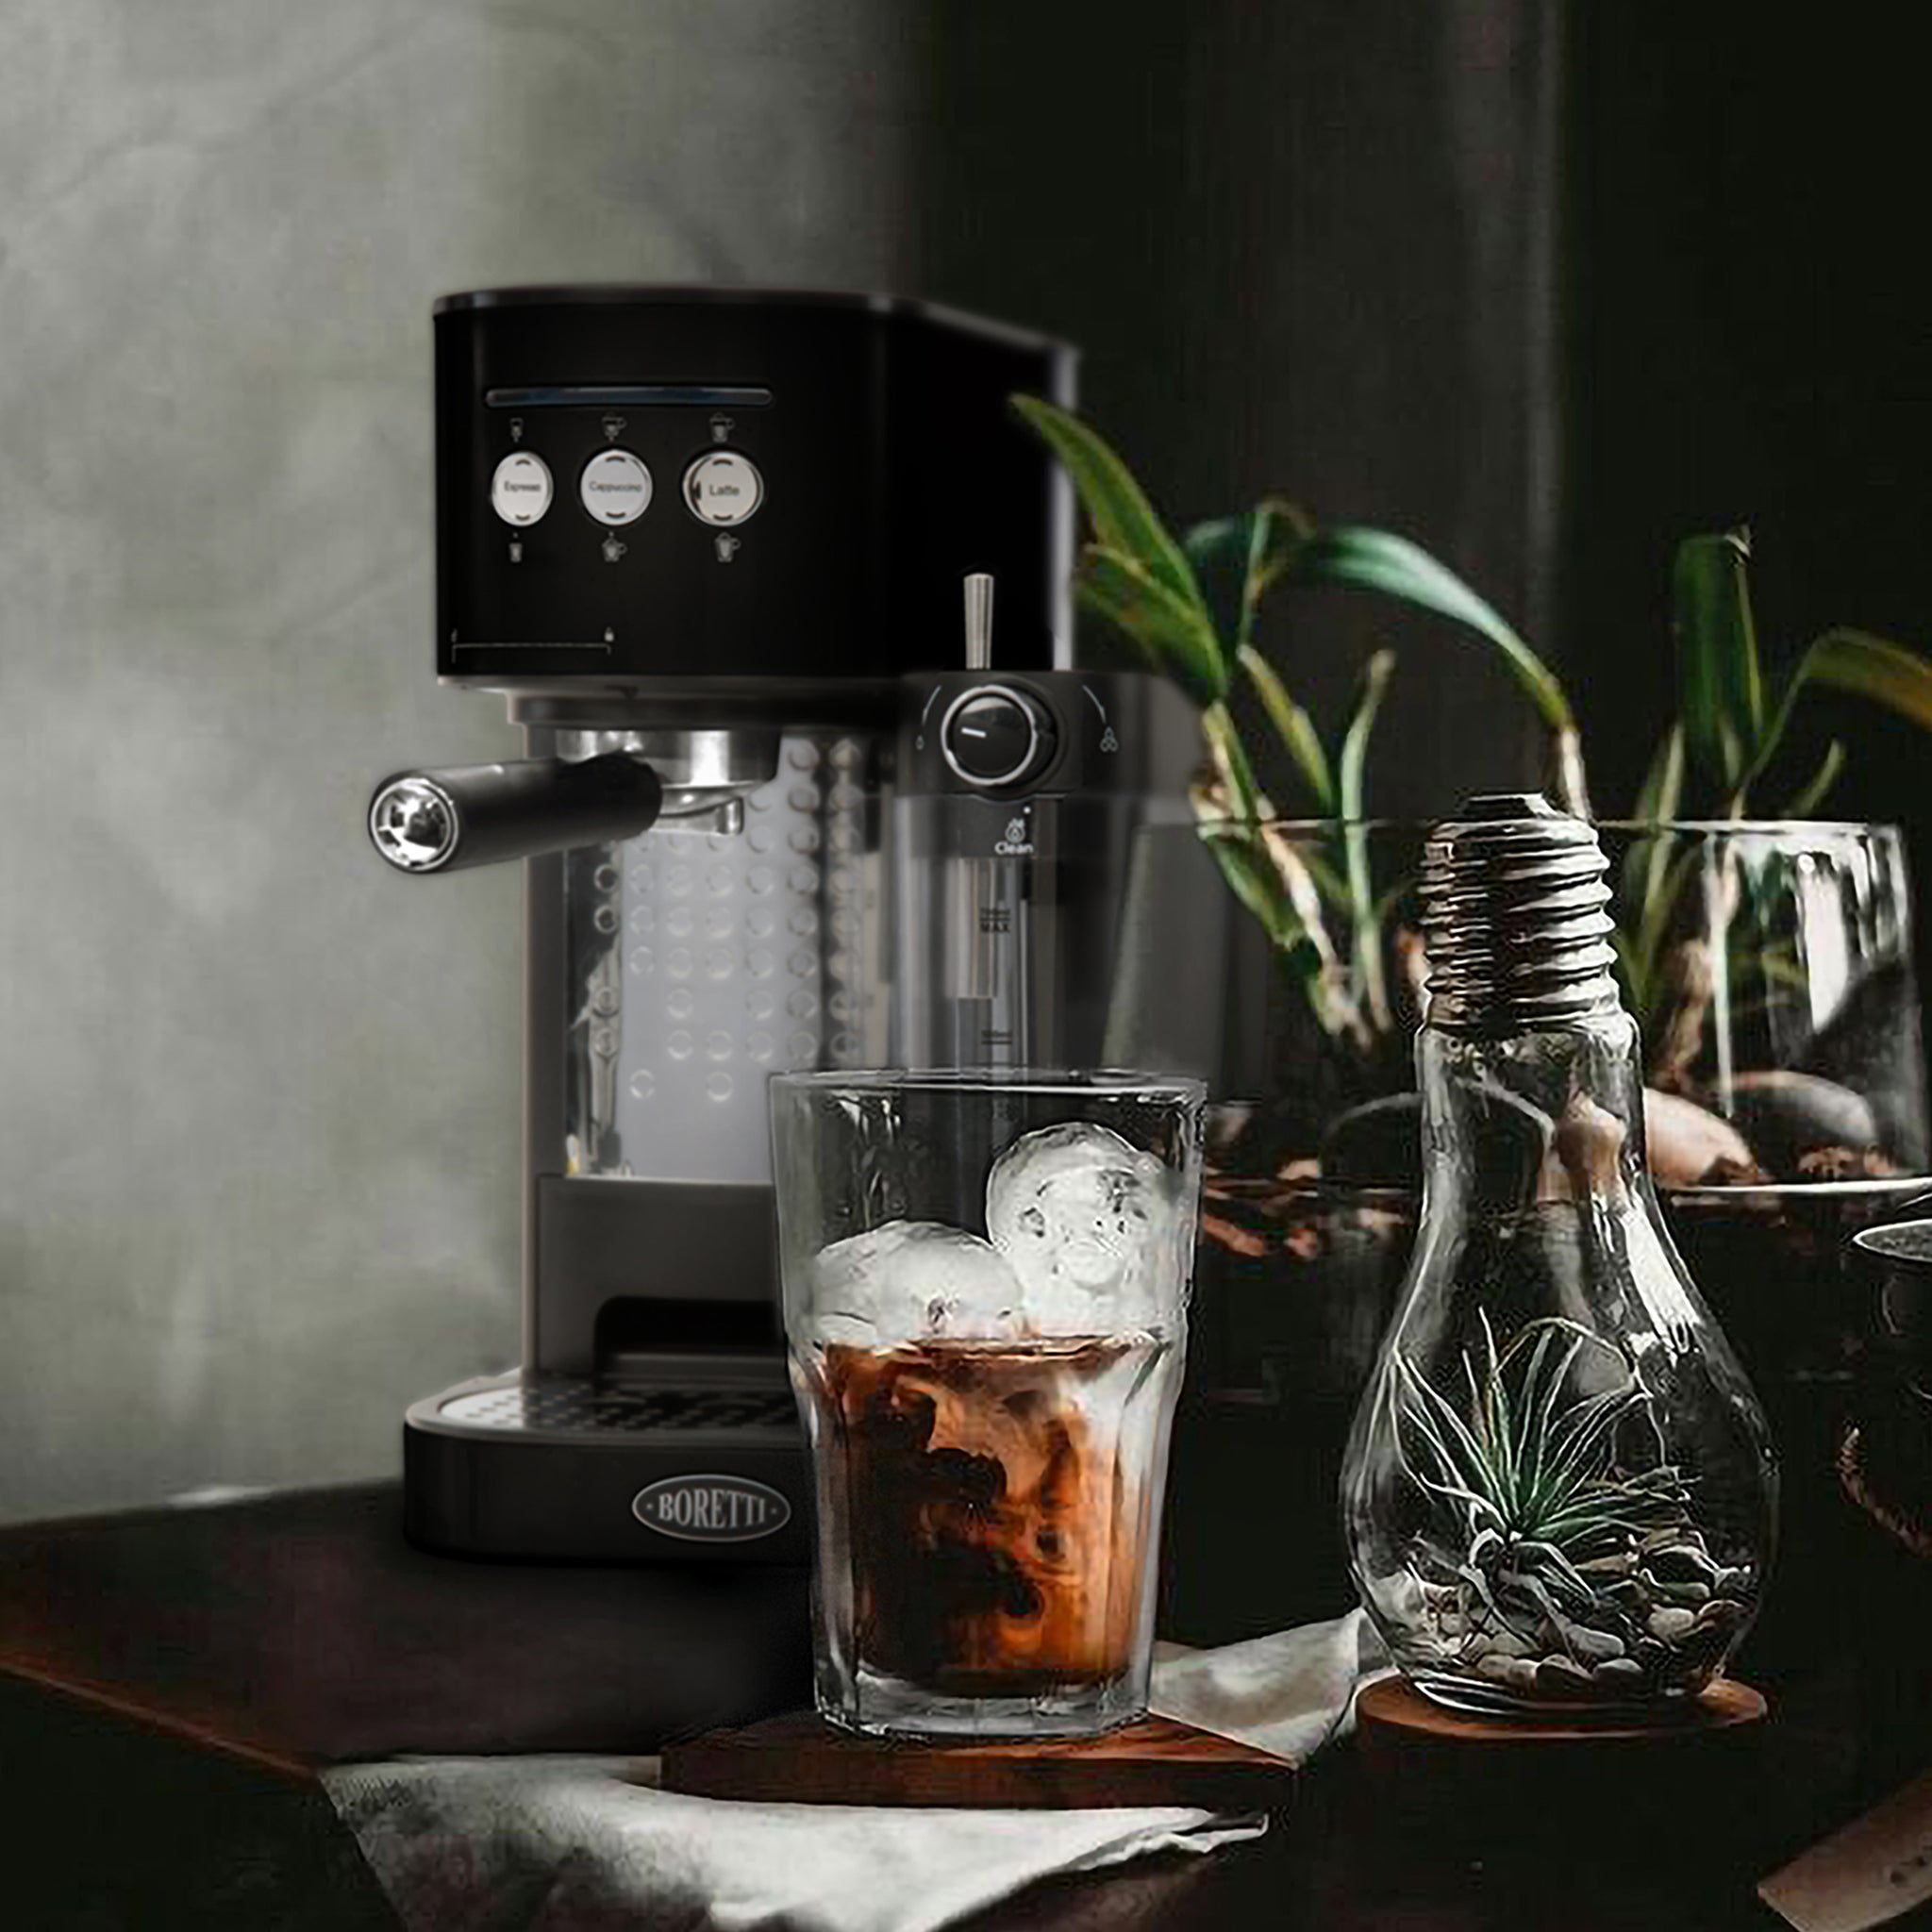 Bedachtzaam Heel boos Zin Espresso machine - Zwart – Boretti Collezione Maggiore